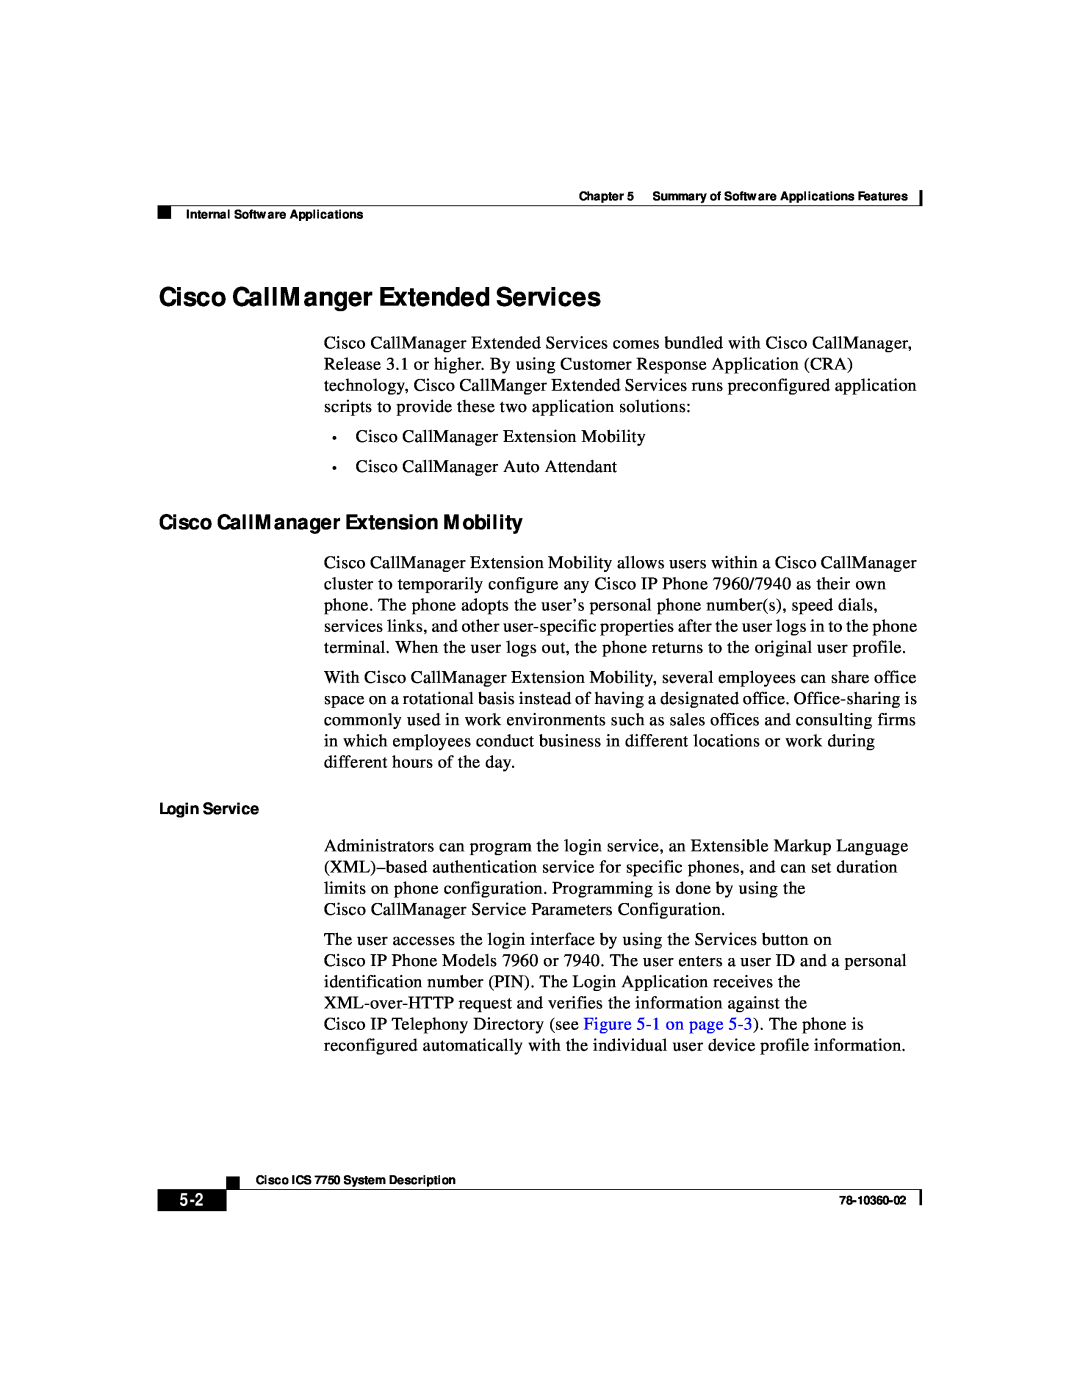 Cisco Systems ICS-7750 manual Cisco CallManger Extended Services, Cisco CallManager Extension Mobility, Login Service 